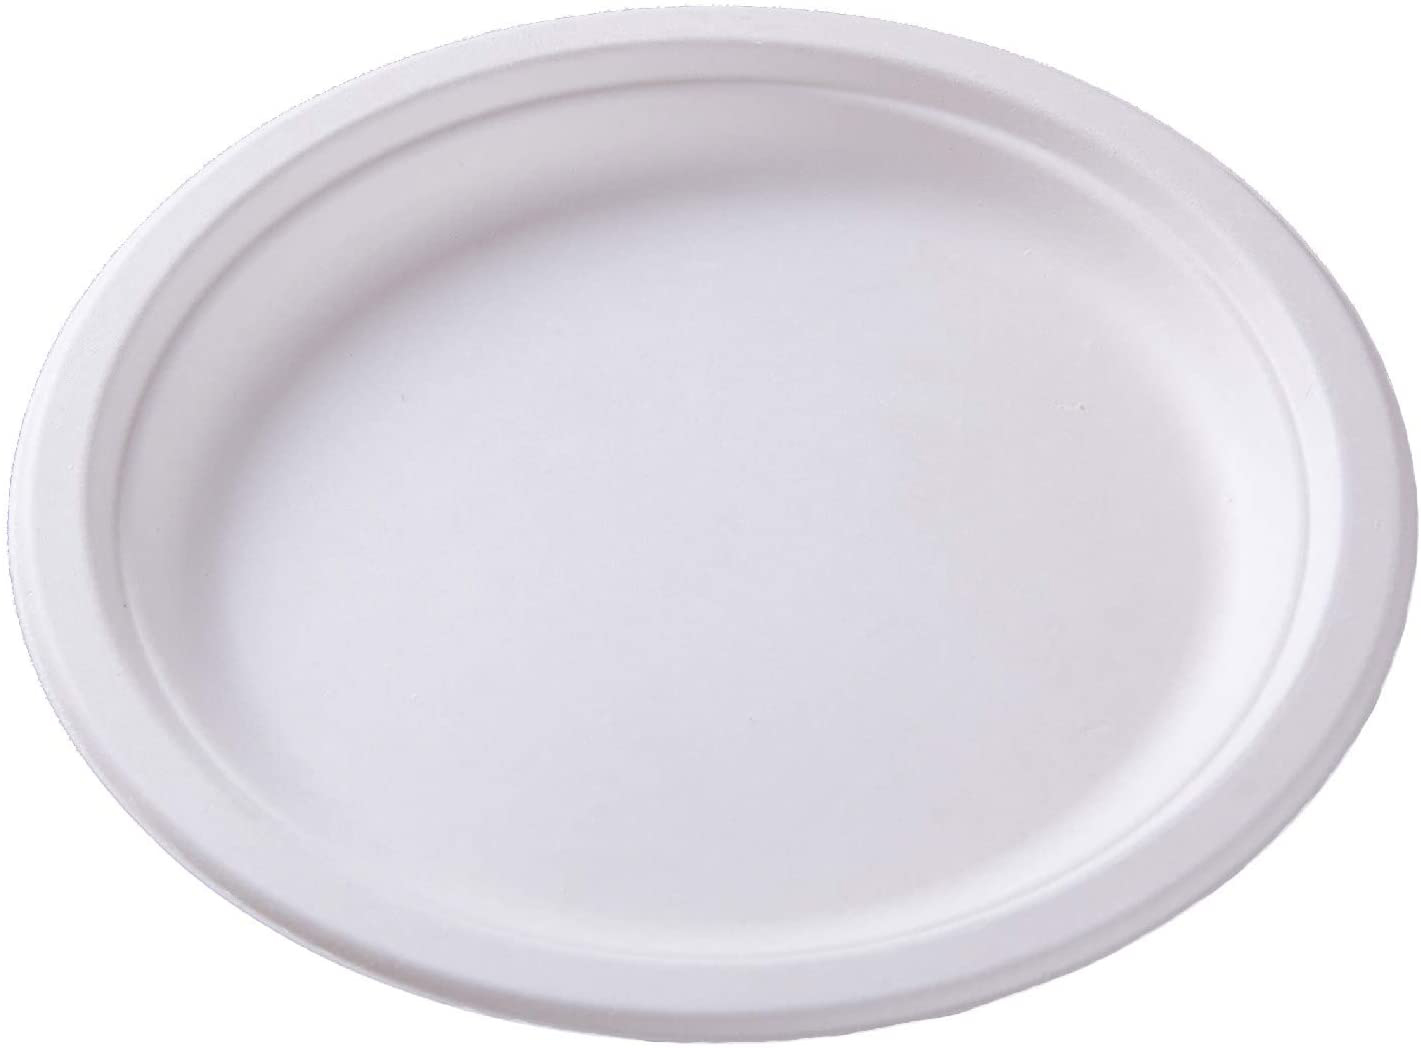 WEBSTAR Assiettes ovale 26cm 26641 blanc, bagasse 50 pcs.